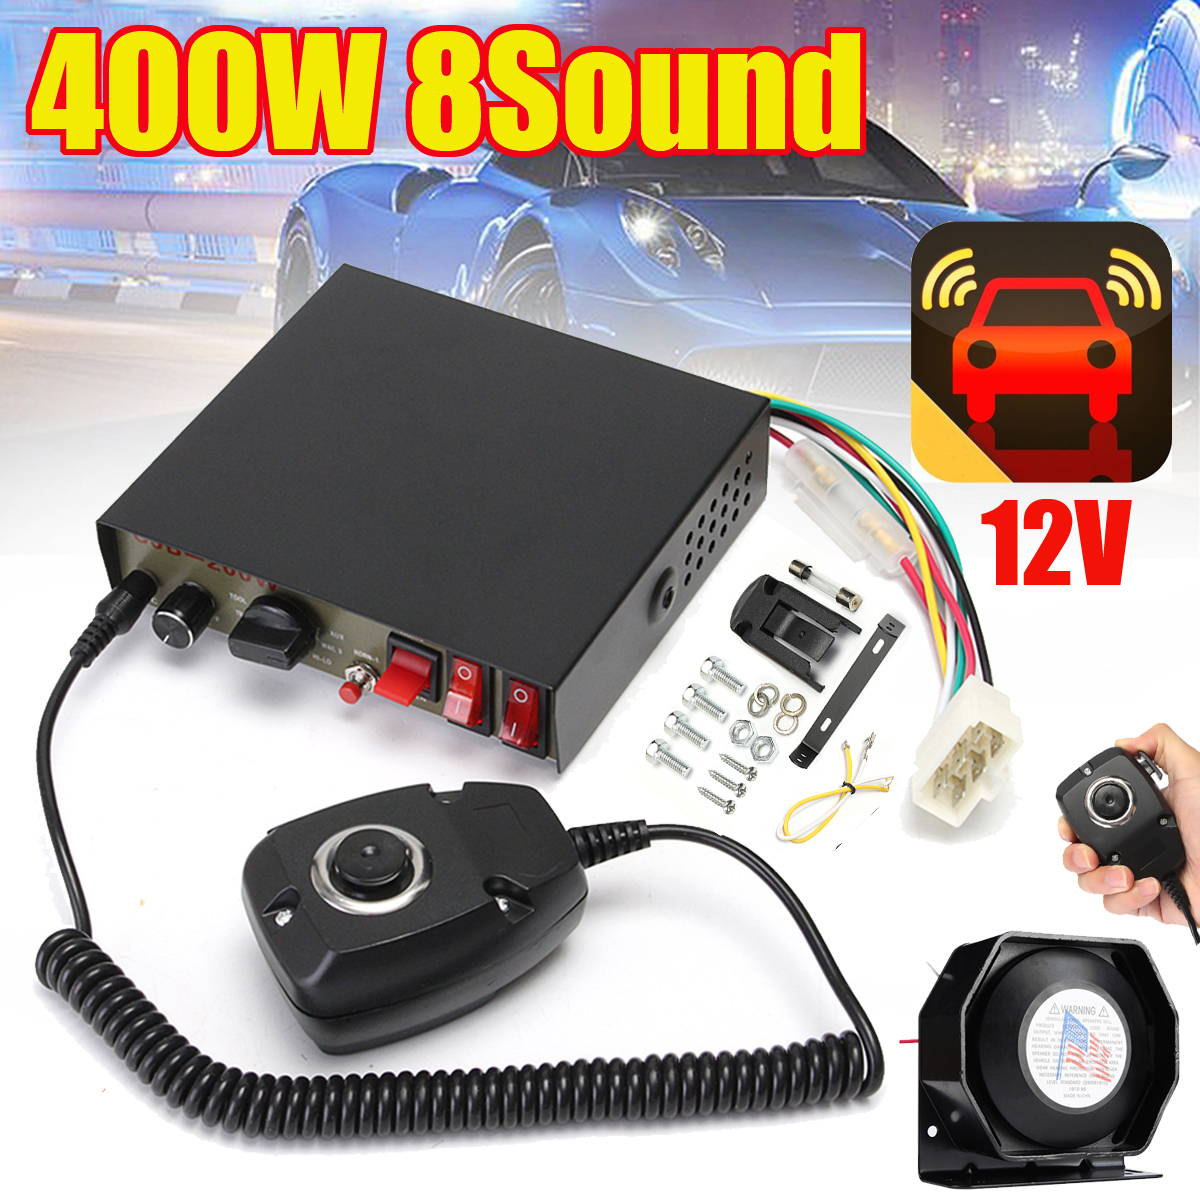 2x 400W 8 Sound Loud Warn Police Fire Car Alarm Siren Horn PA Speaker MIC System 